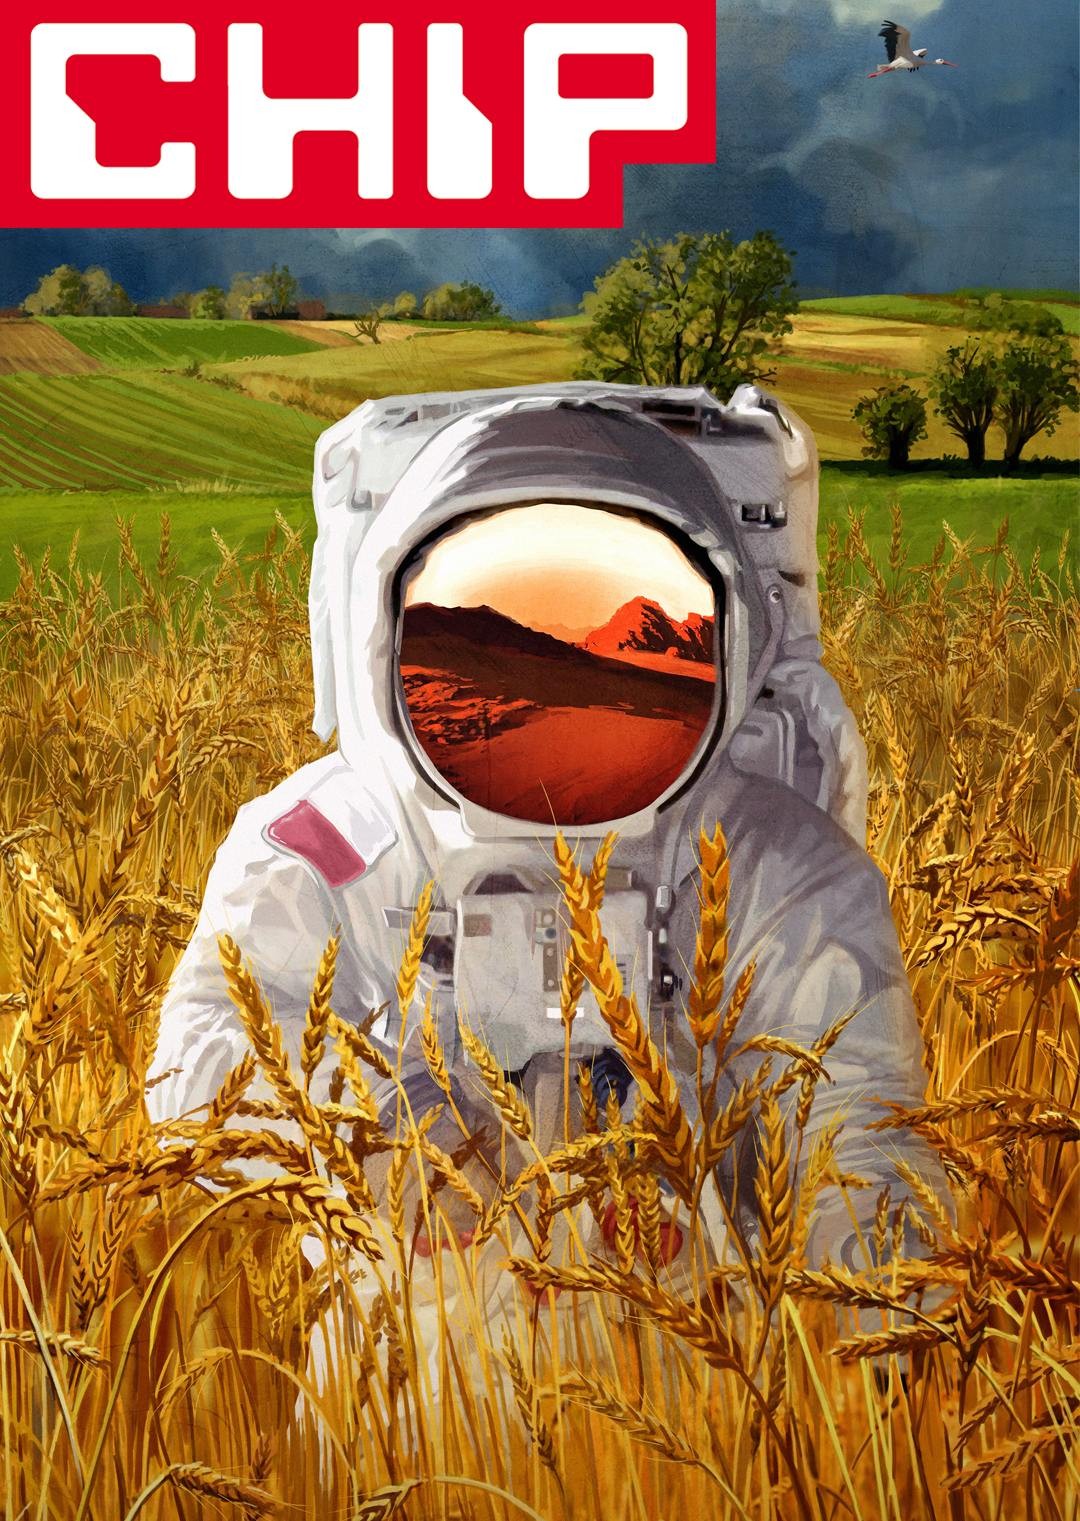 Człowiek w białym kombinezonie kosmicznym pośród łanów pszenicy, w tle zielone i złotawe pola, ale w wizjerze odbija się pustynny, marsjański krajobraz; logo CHIP.